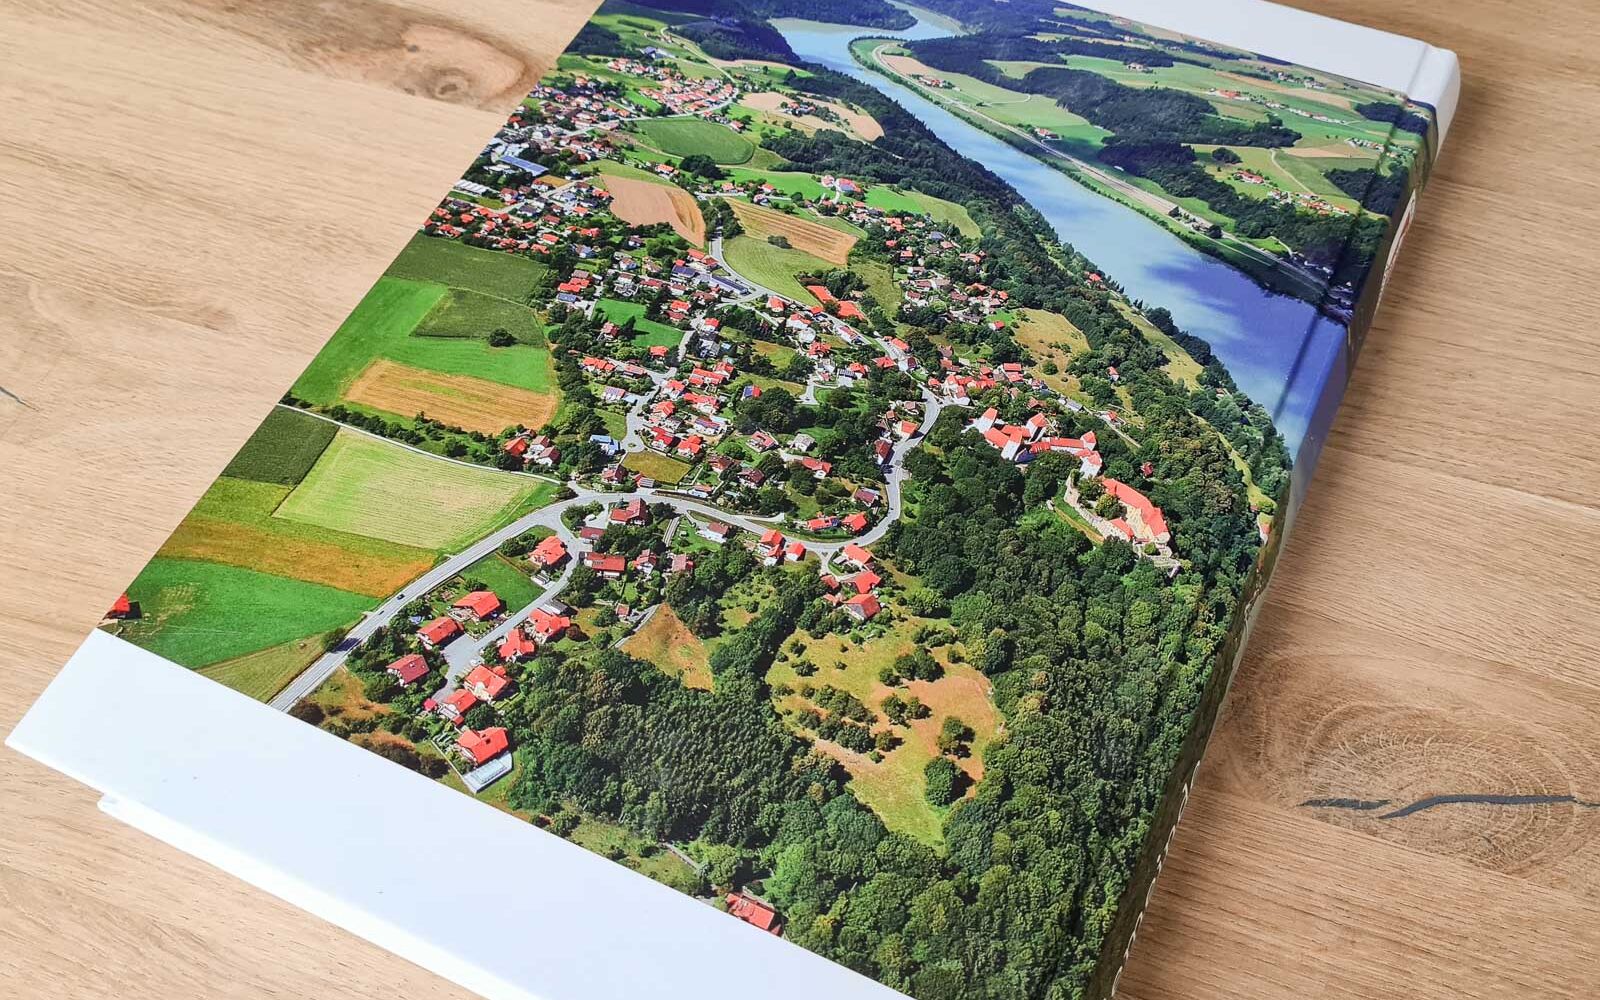 Rückseite der Hardcover-Buches mit Luftaufnahmen Neuburg und Dommelstadl